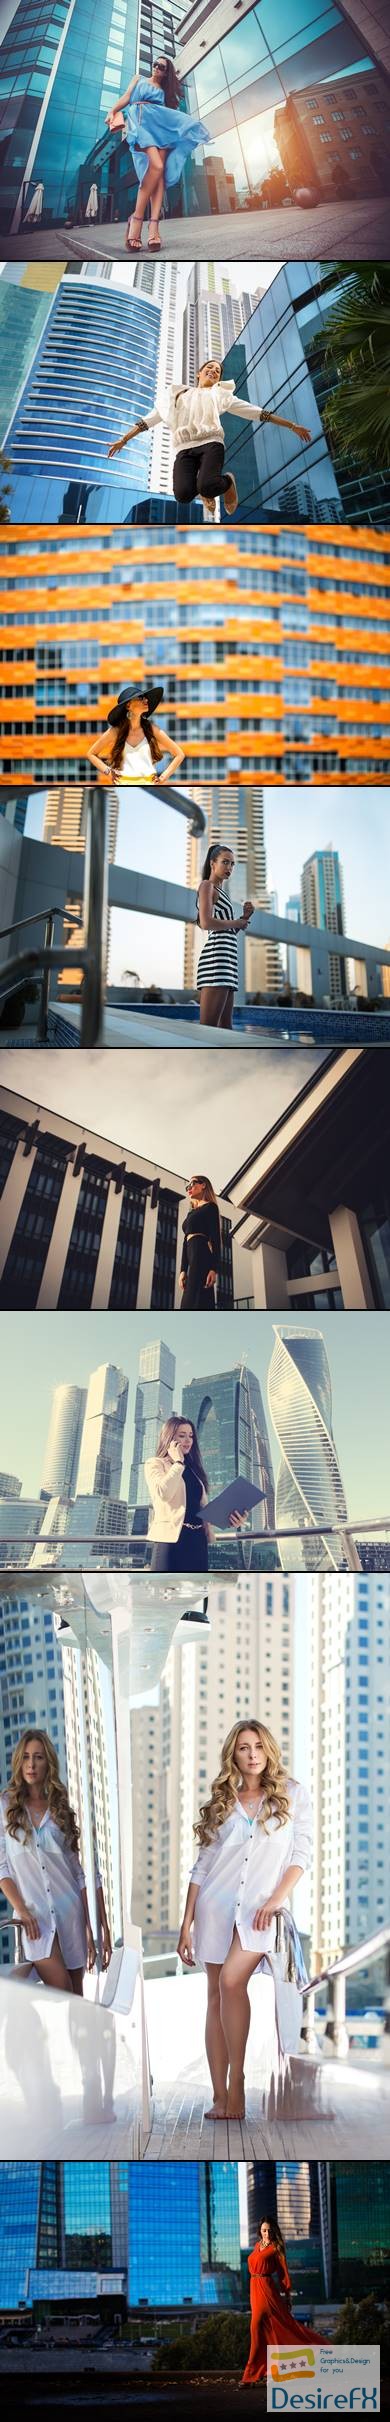 Girl among skyscrapers